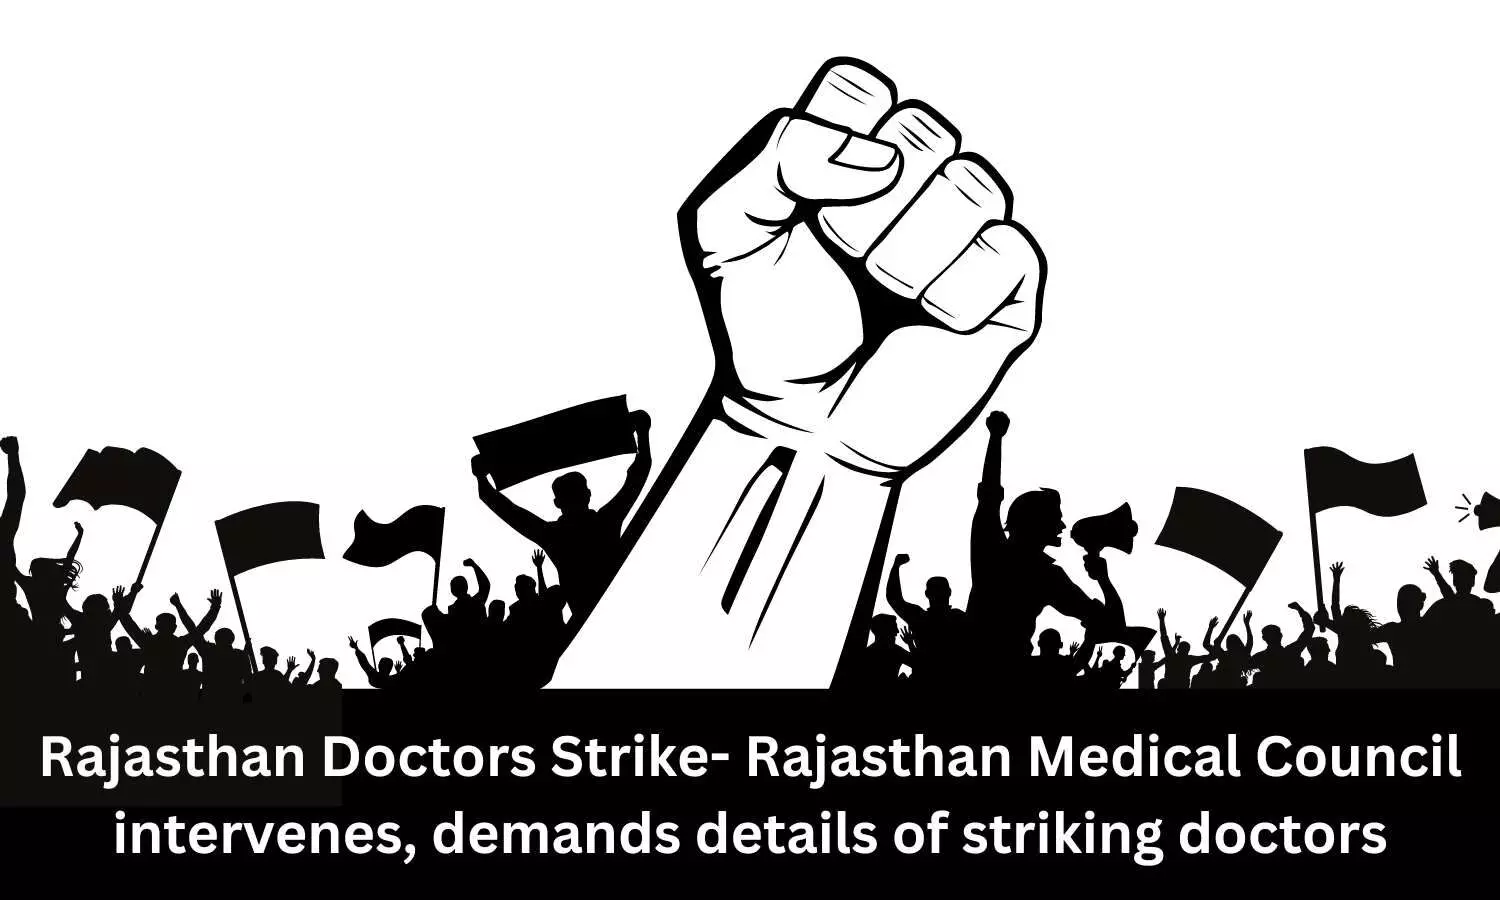 Rajasthan Doctors Strike- Rajasthan Medical Council intervenes, demands details of striking doctors